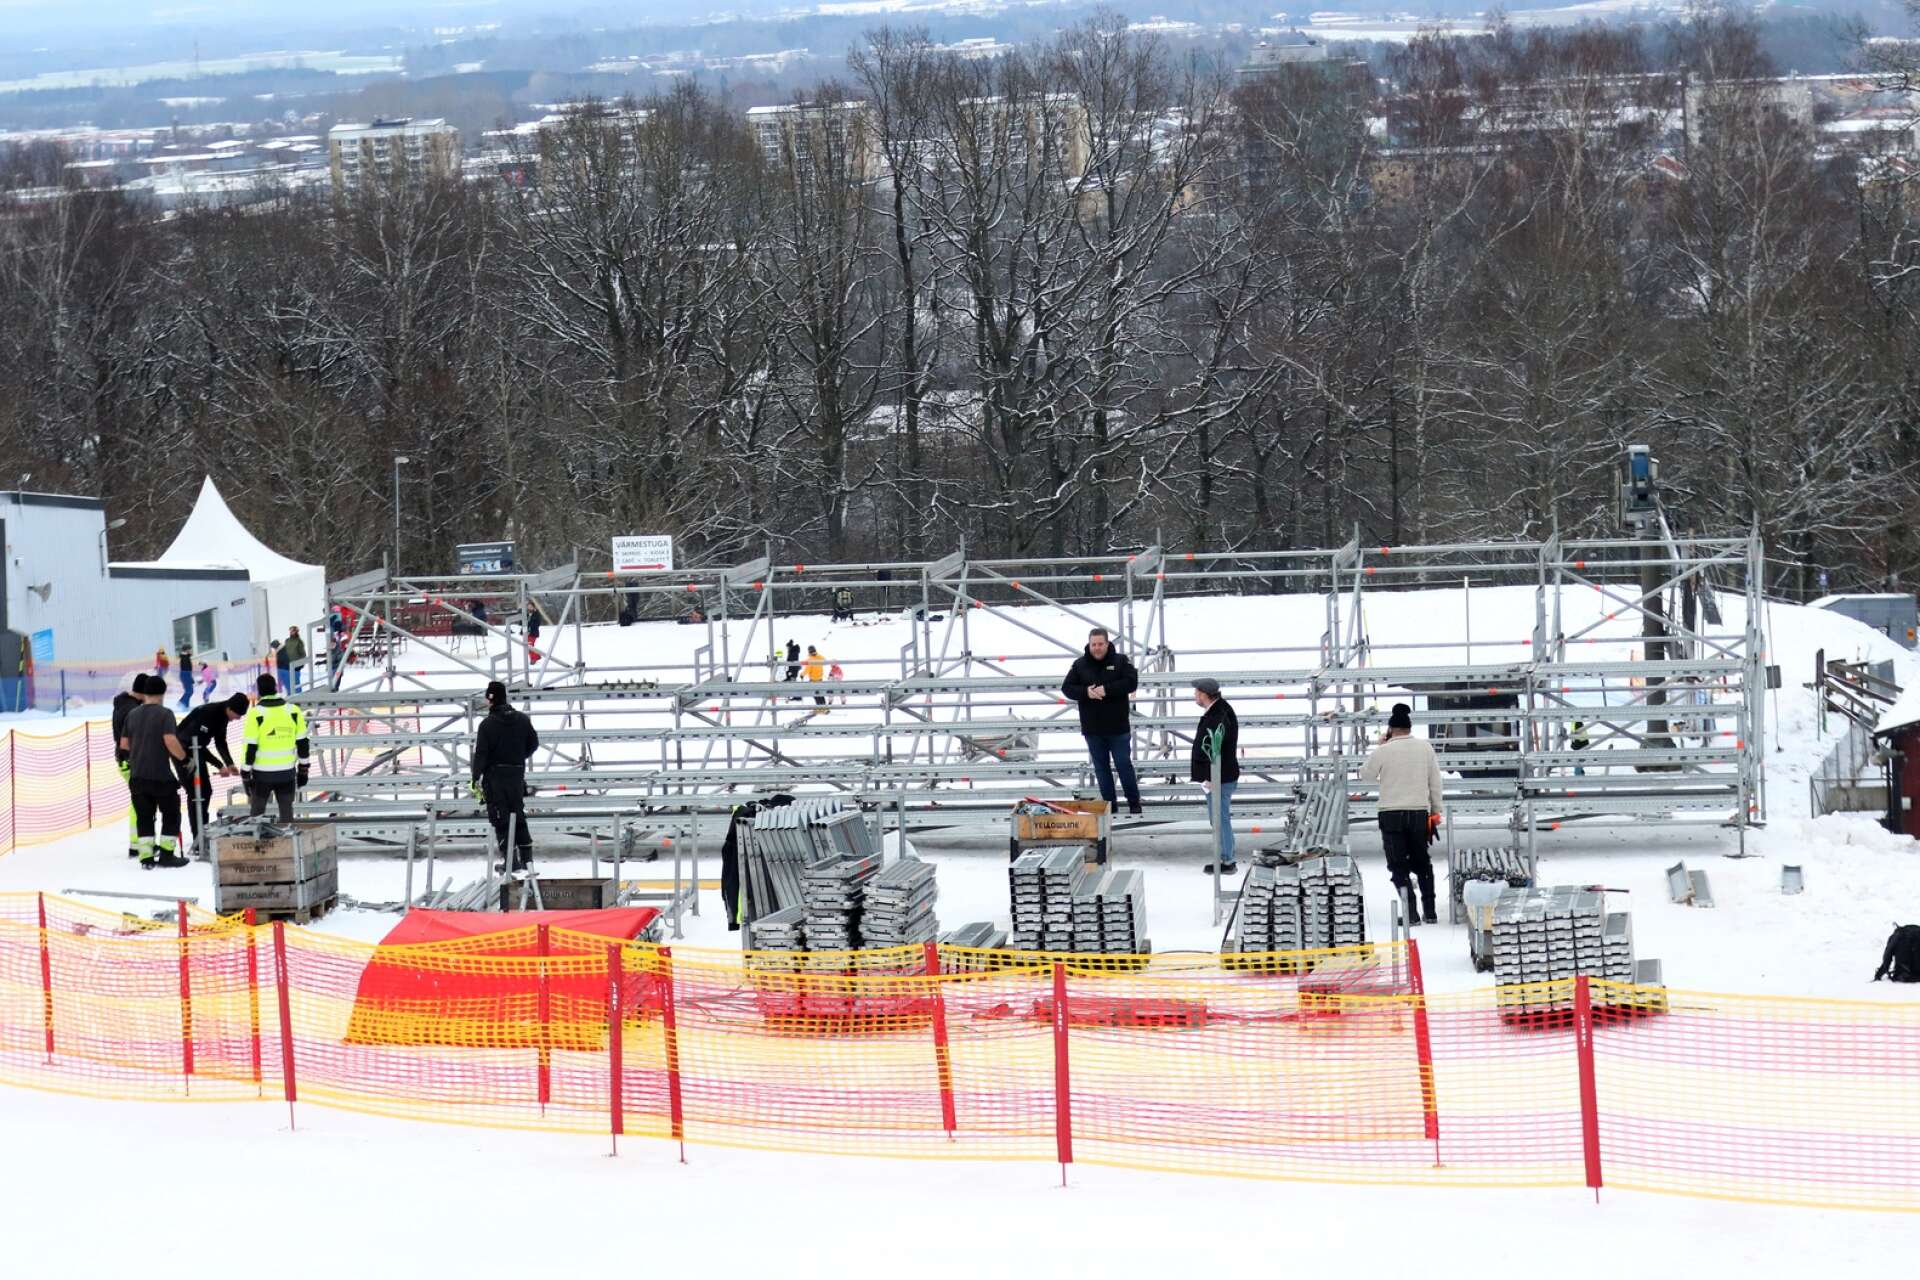 Billingebacken ska bli Lilla Schladming. Nu har bygget påbörjats. Under lördagen iordningställdes en ståplatsläktare i slalombacken inför tävlingarna i parallellslalom.